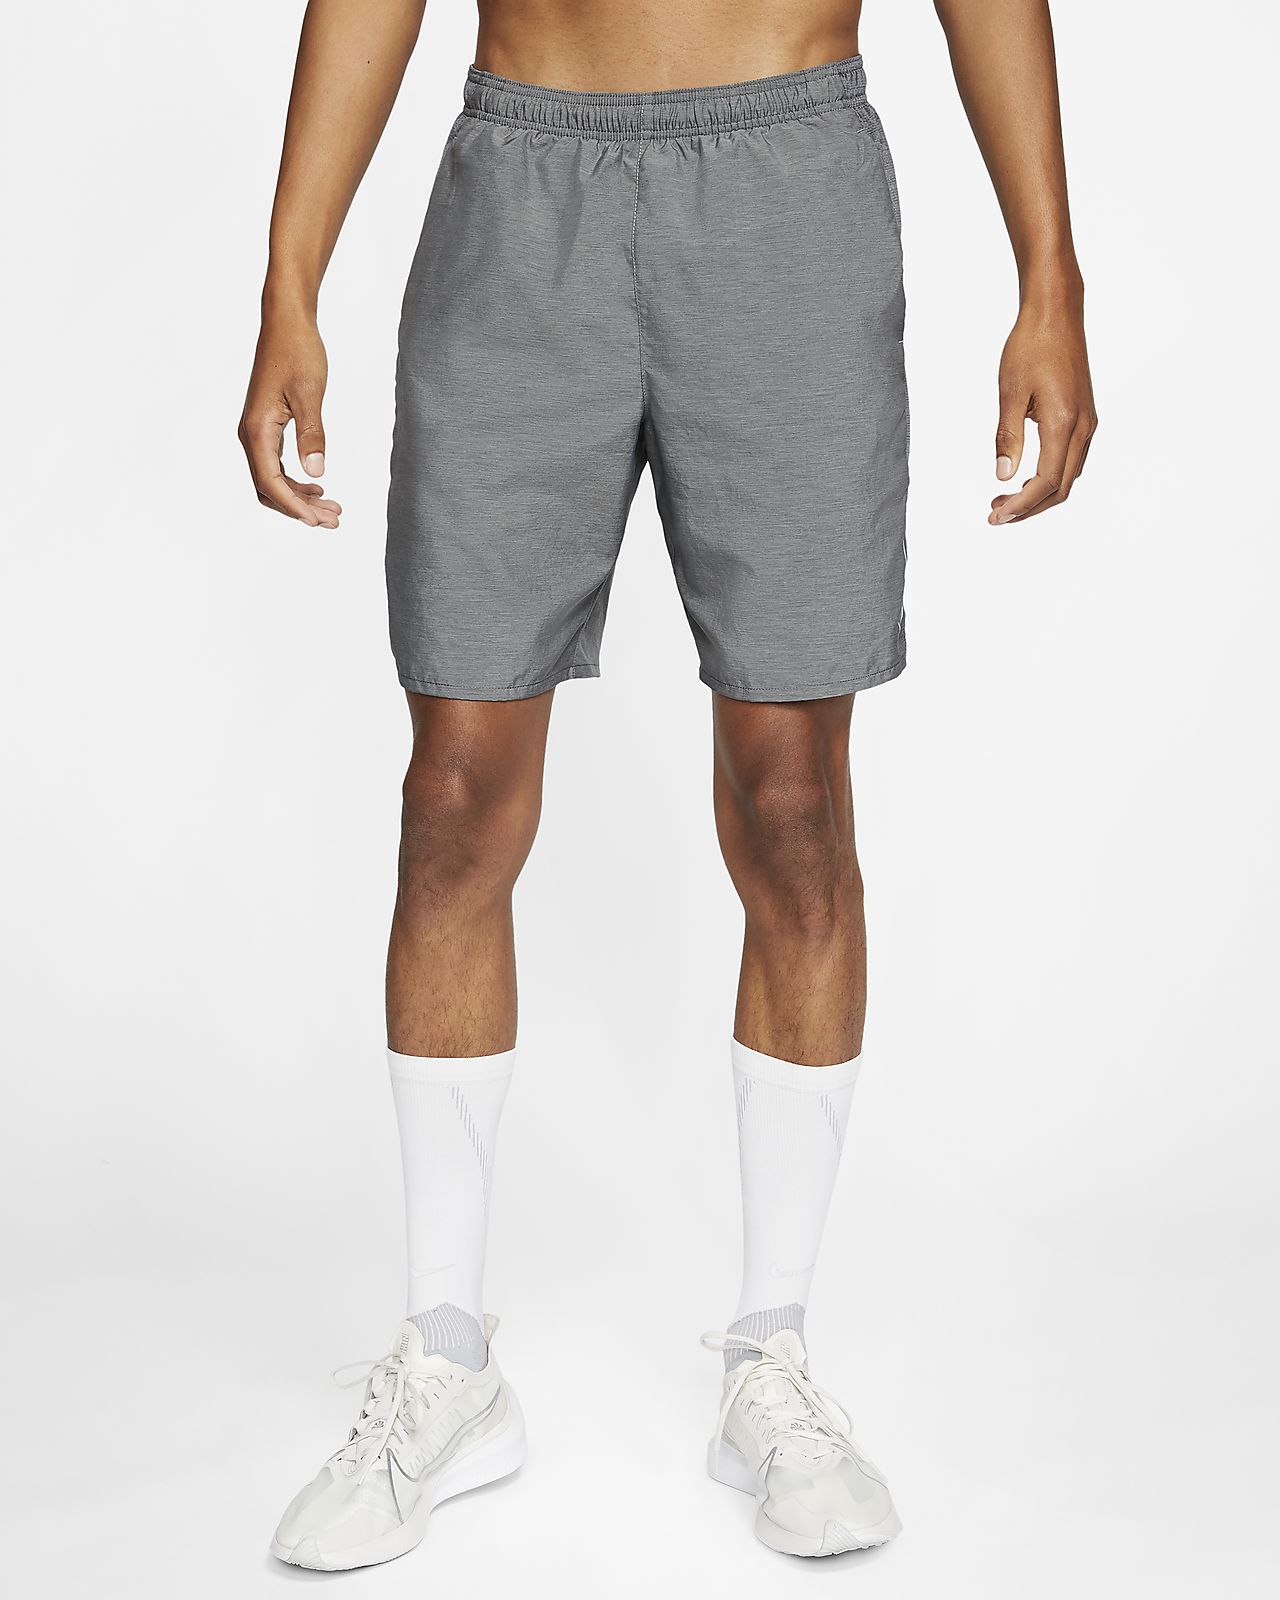 grey nike running shorts